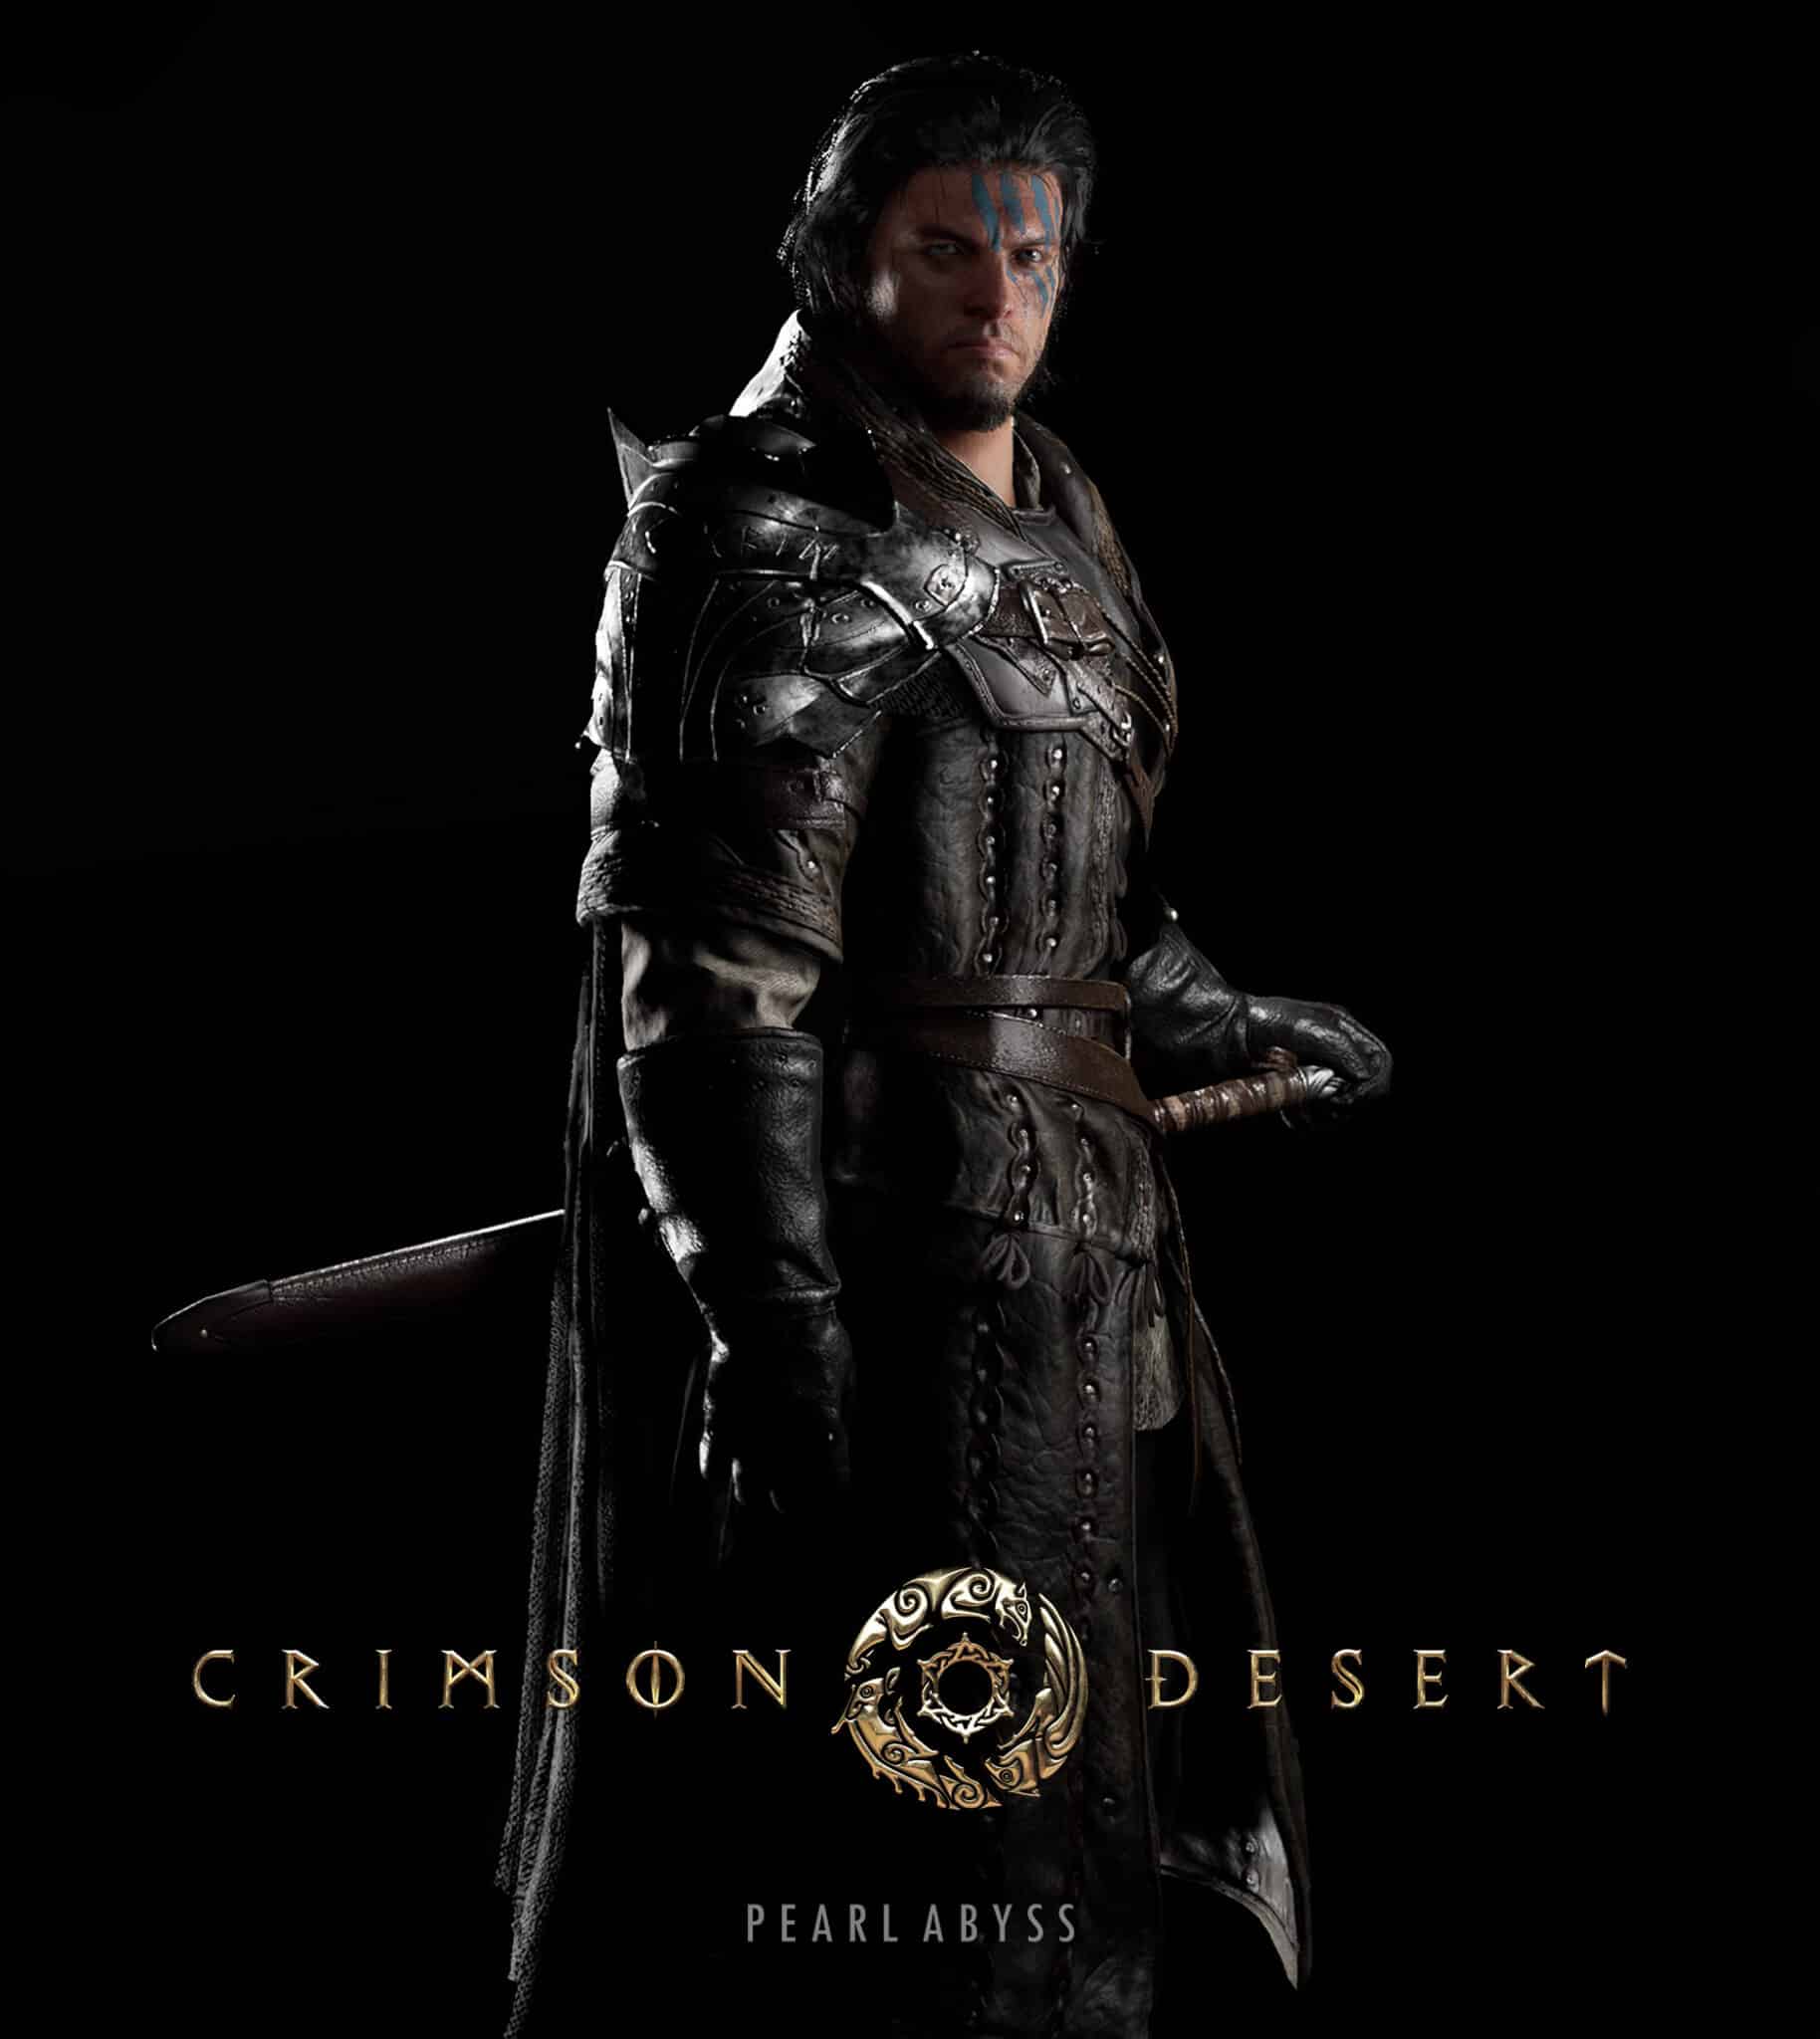 Crimson Desert 'Game Overview' and 'Trailer Commentary' Developer